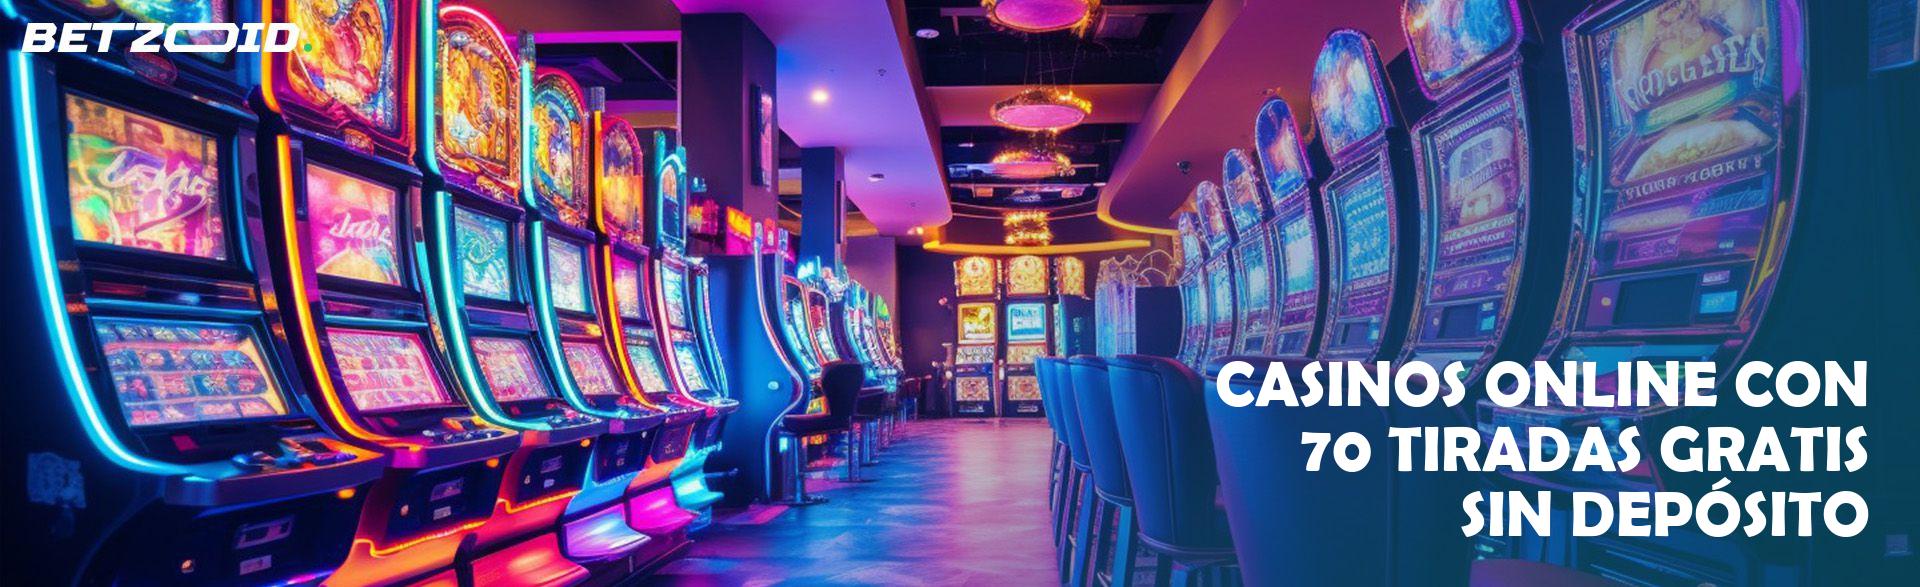 Casinos Online con 70 Tiradas Gratis sin Depósito.